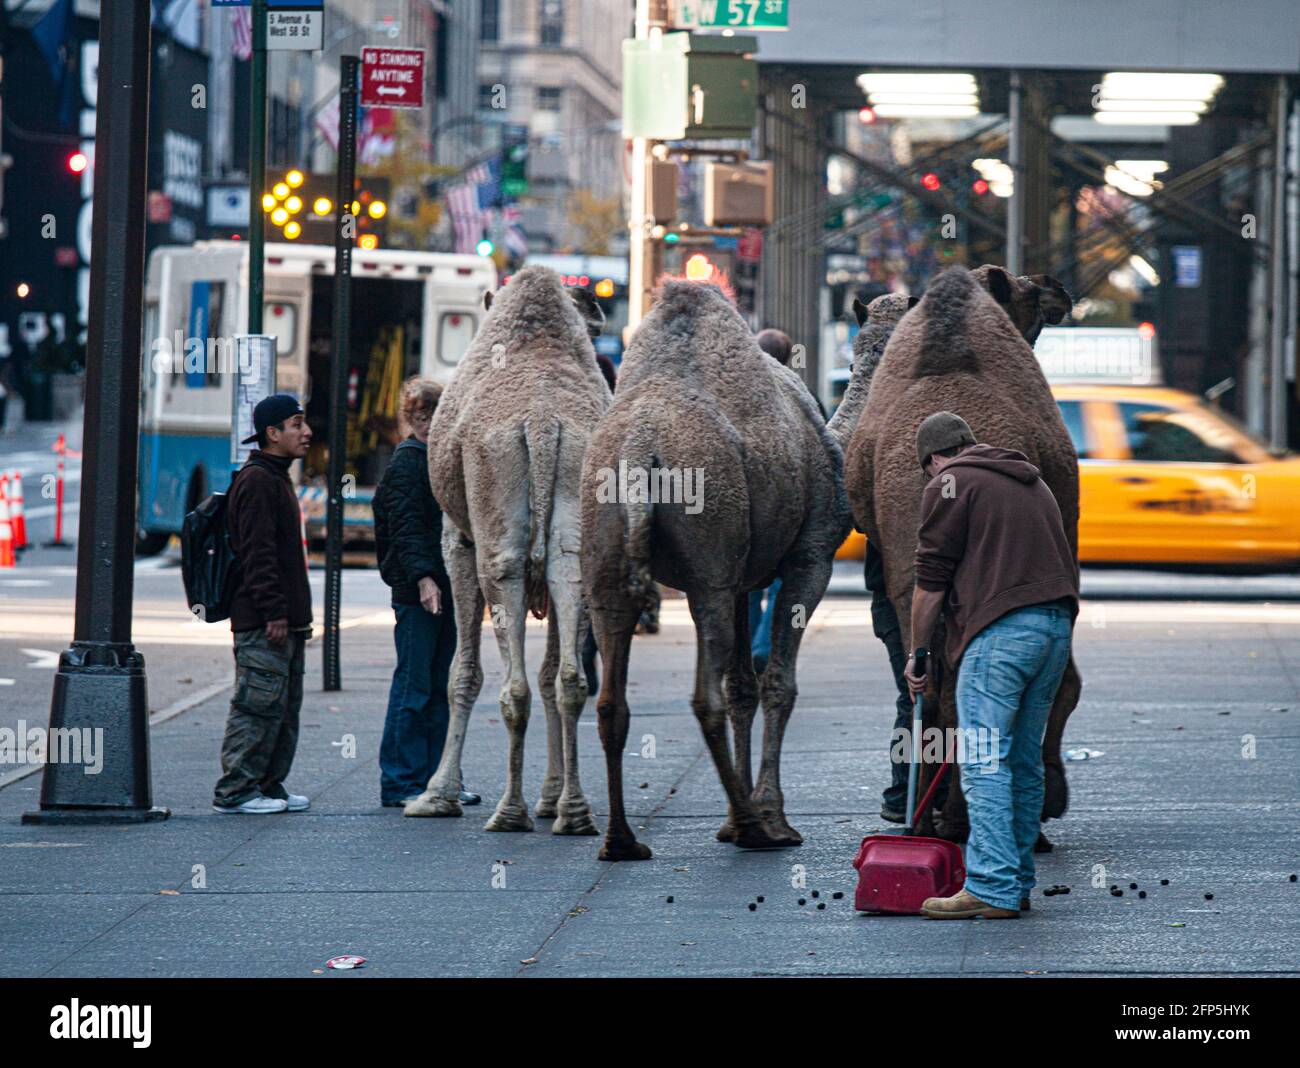 Des gens perplexes regardent une scène bizarre de 3 chameaux marchant le long de la 6e Avenue, New York, avec un homme qui suit les fientes de chameau. Banque D'Images